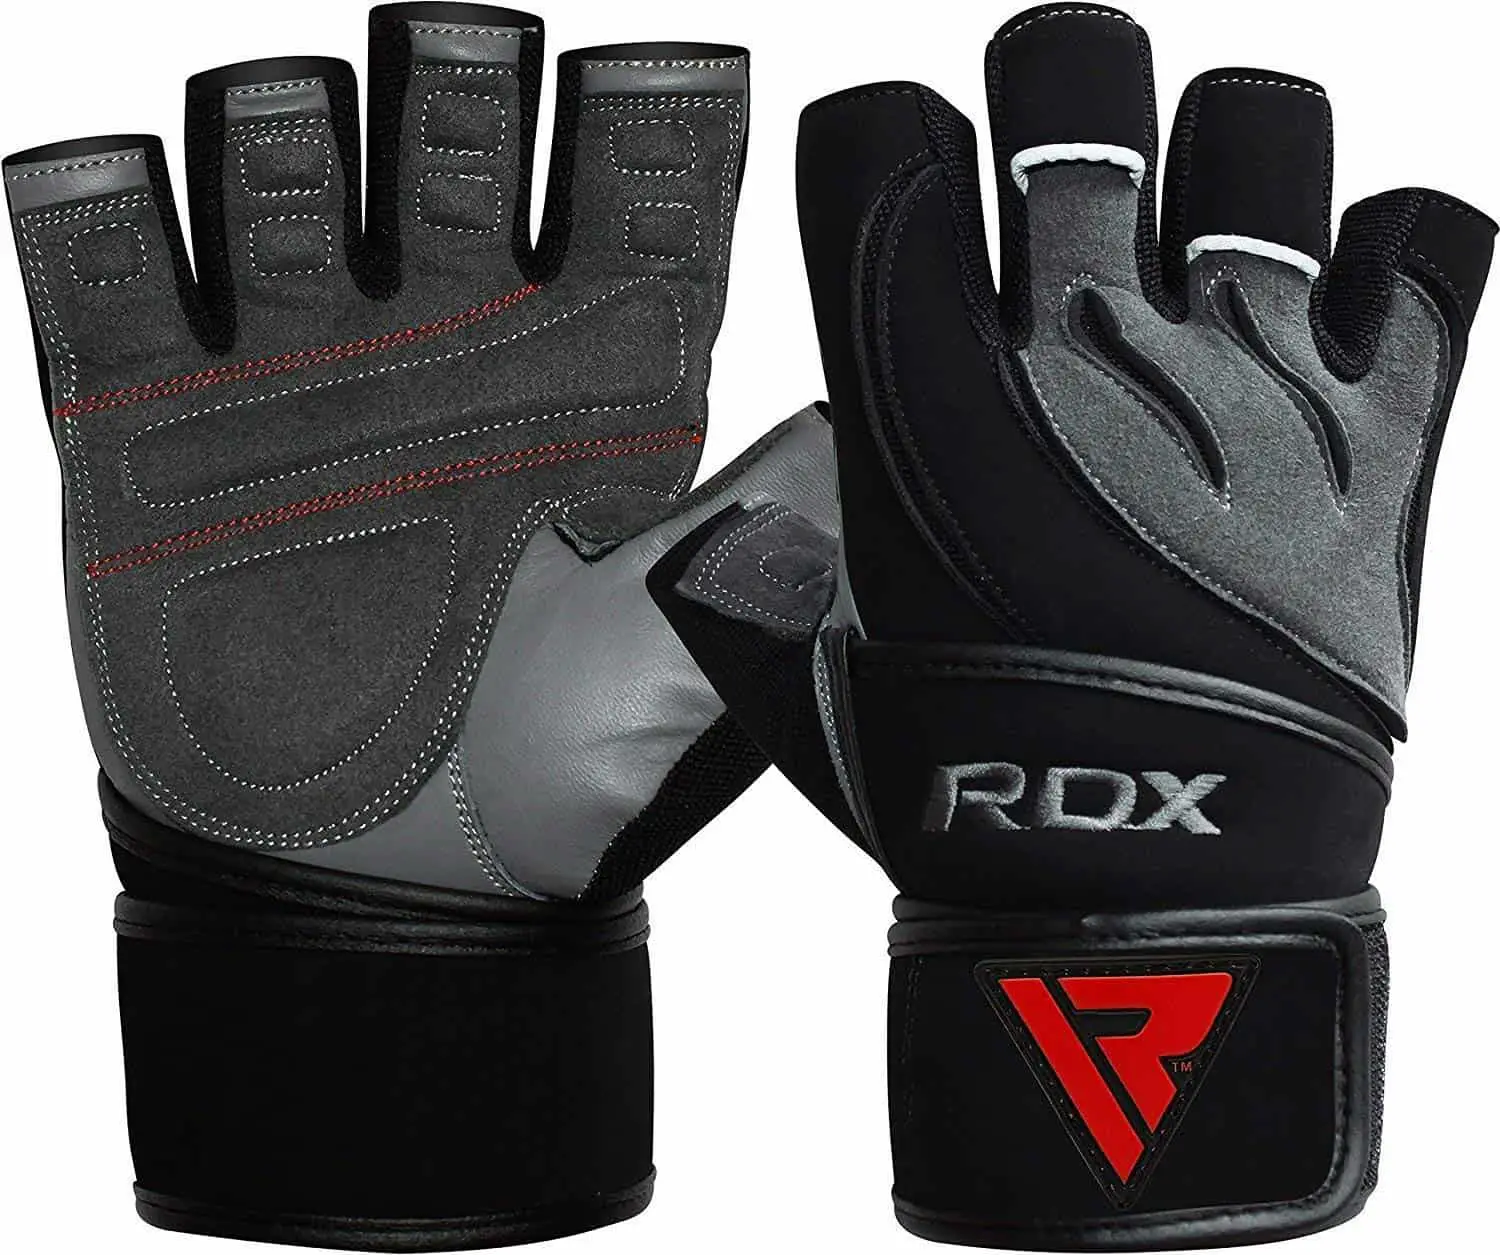 ถุงมือฟิตเนส RDX พร้อมซัพพอร์ตข้อมือที่ดีที่สุด